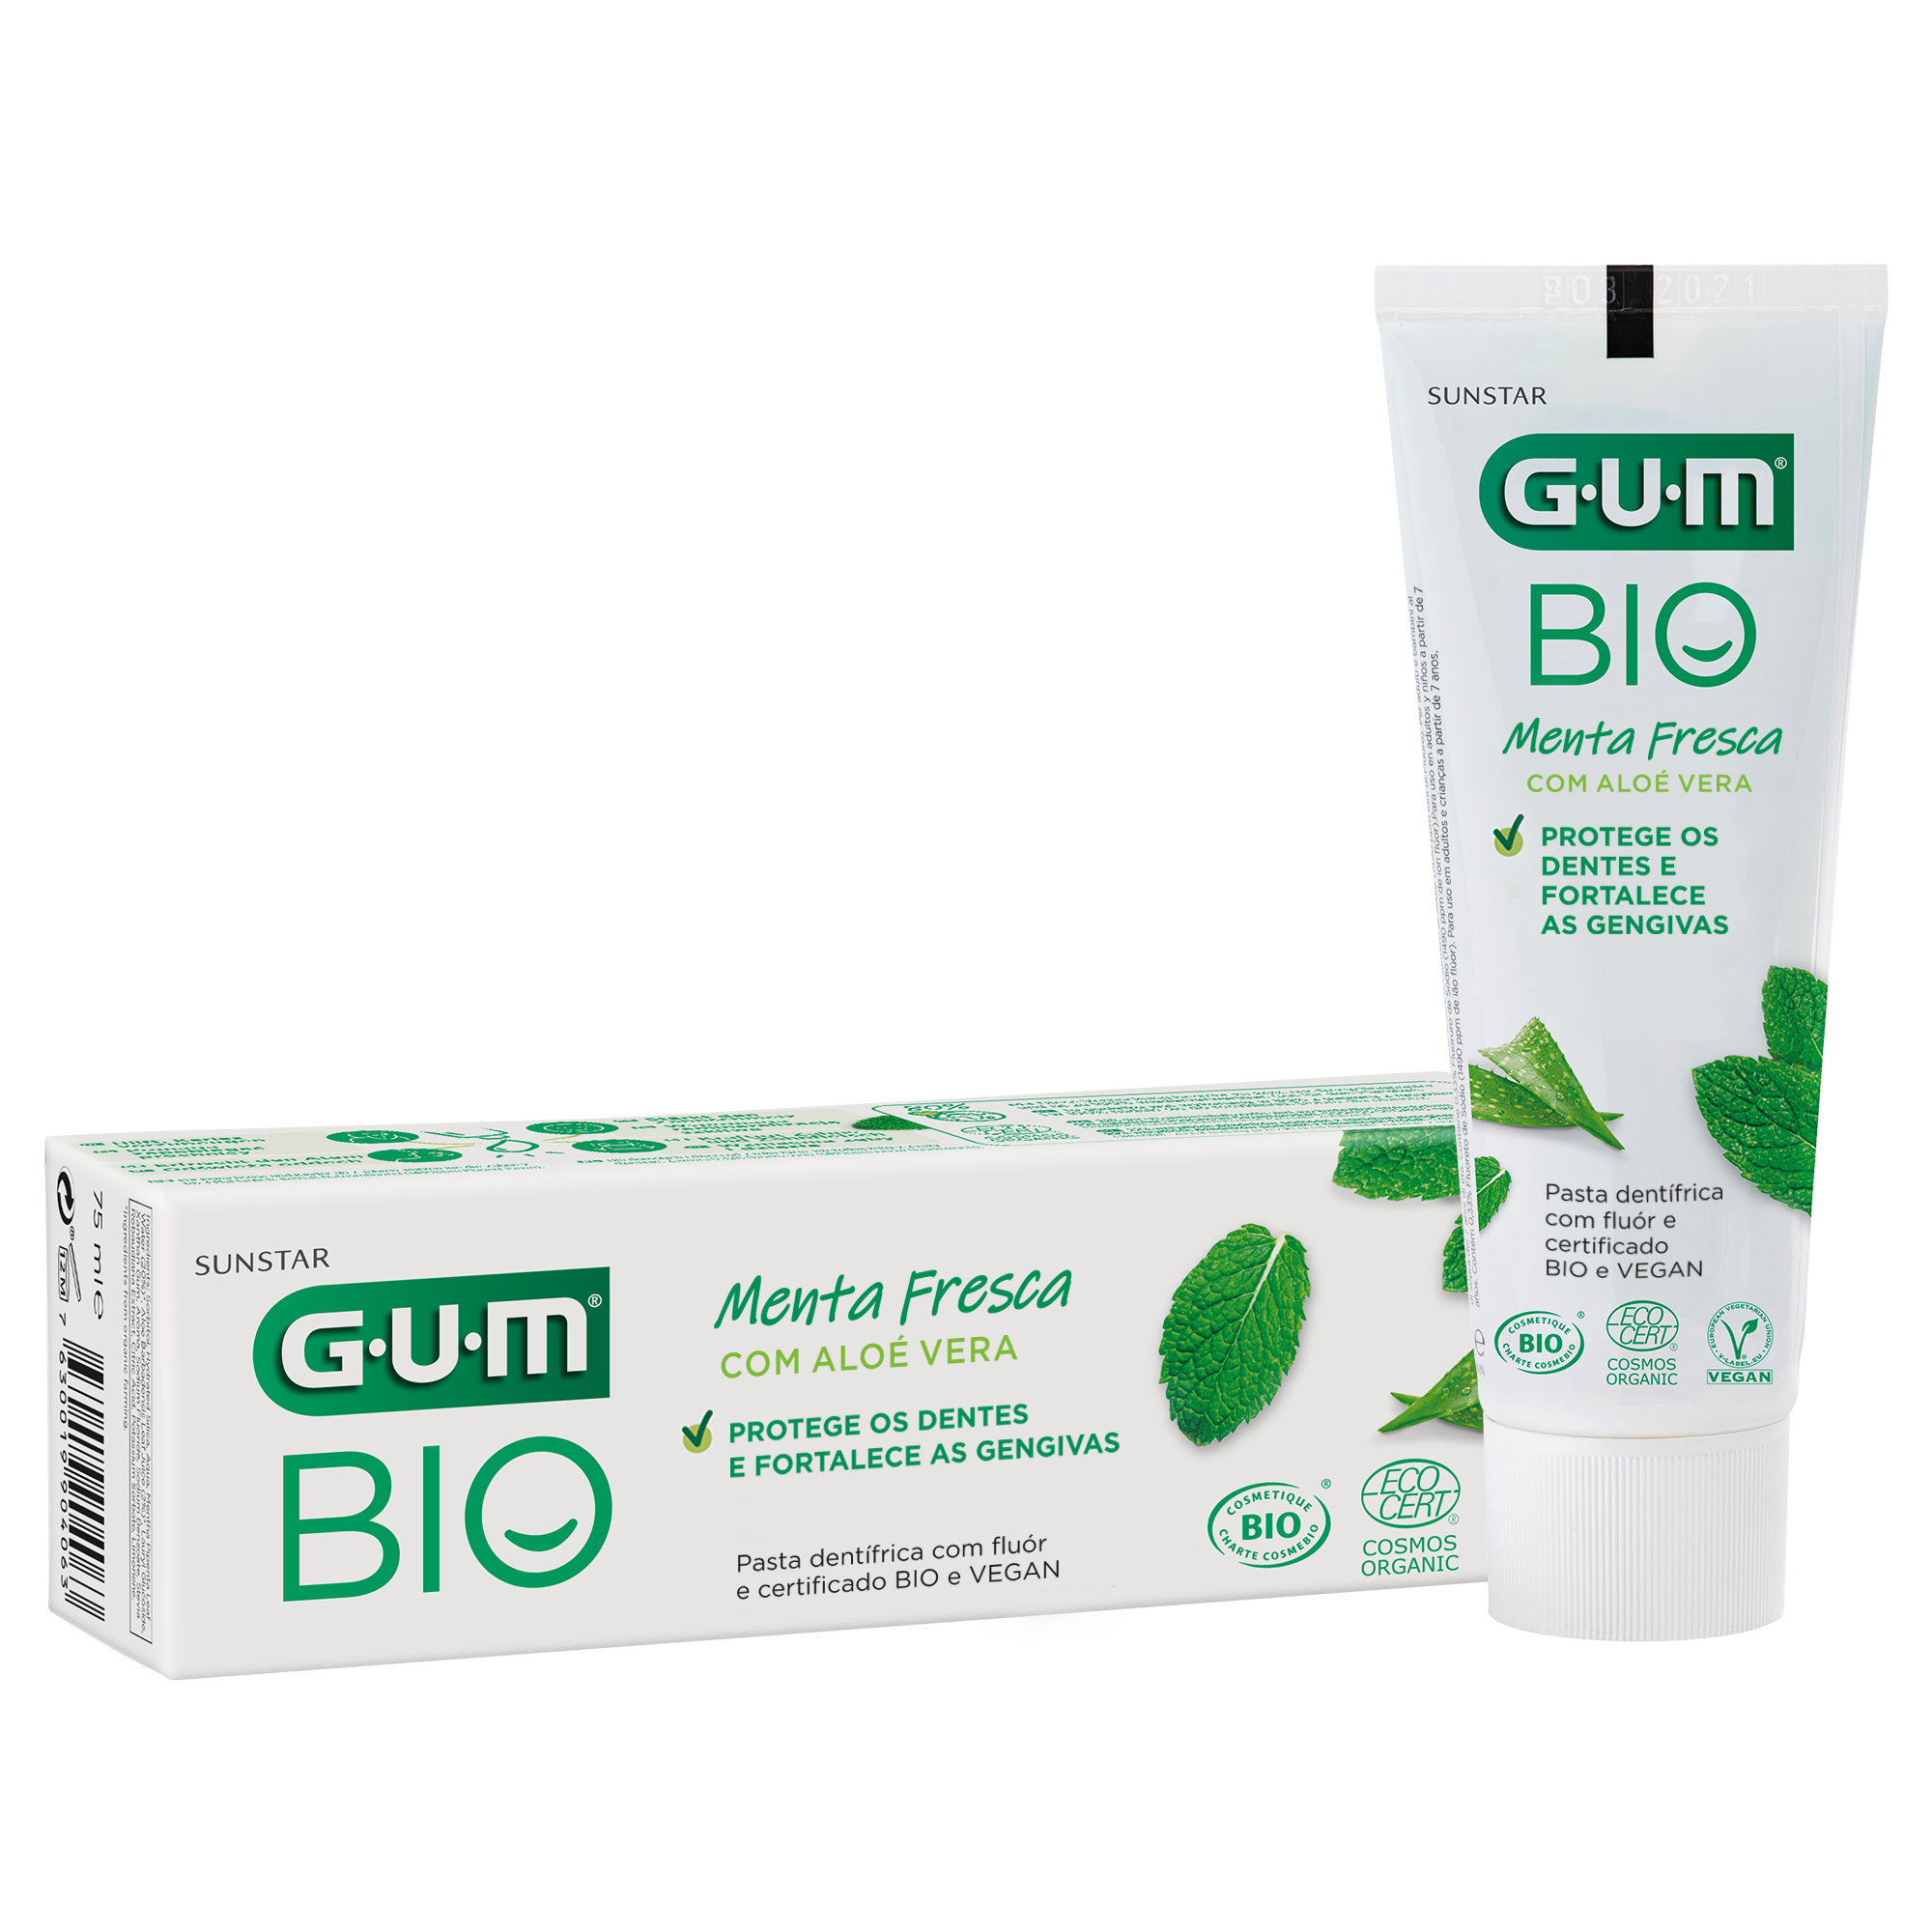 P7020-PT-GUM-BIO-Toothpaste-Box-Tube.png